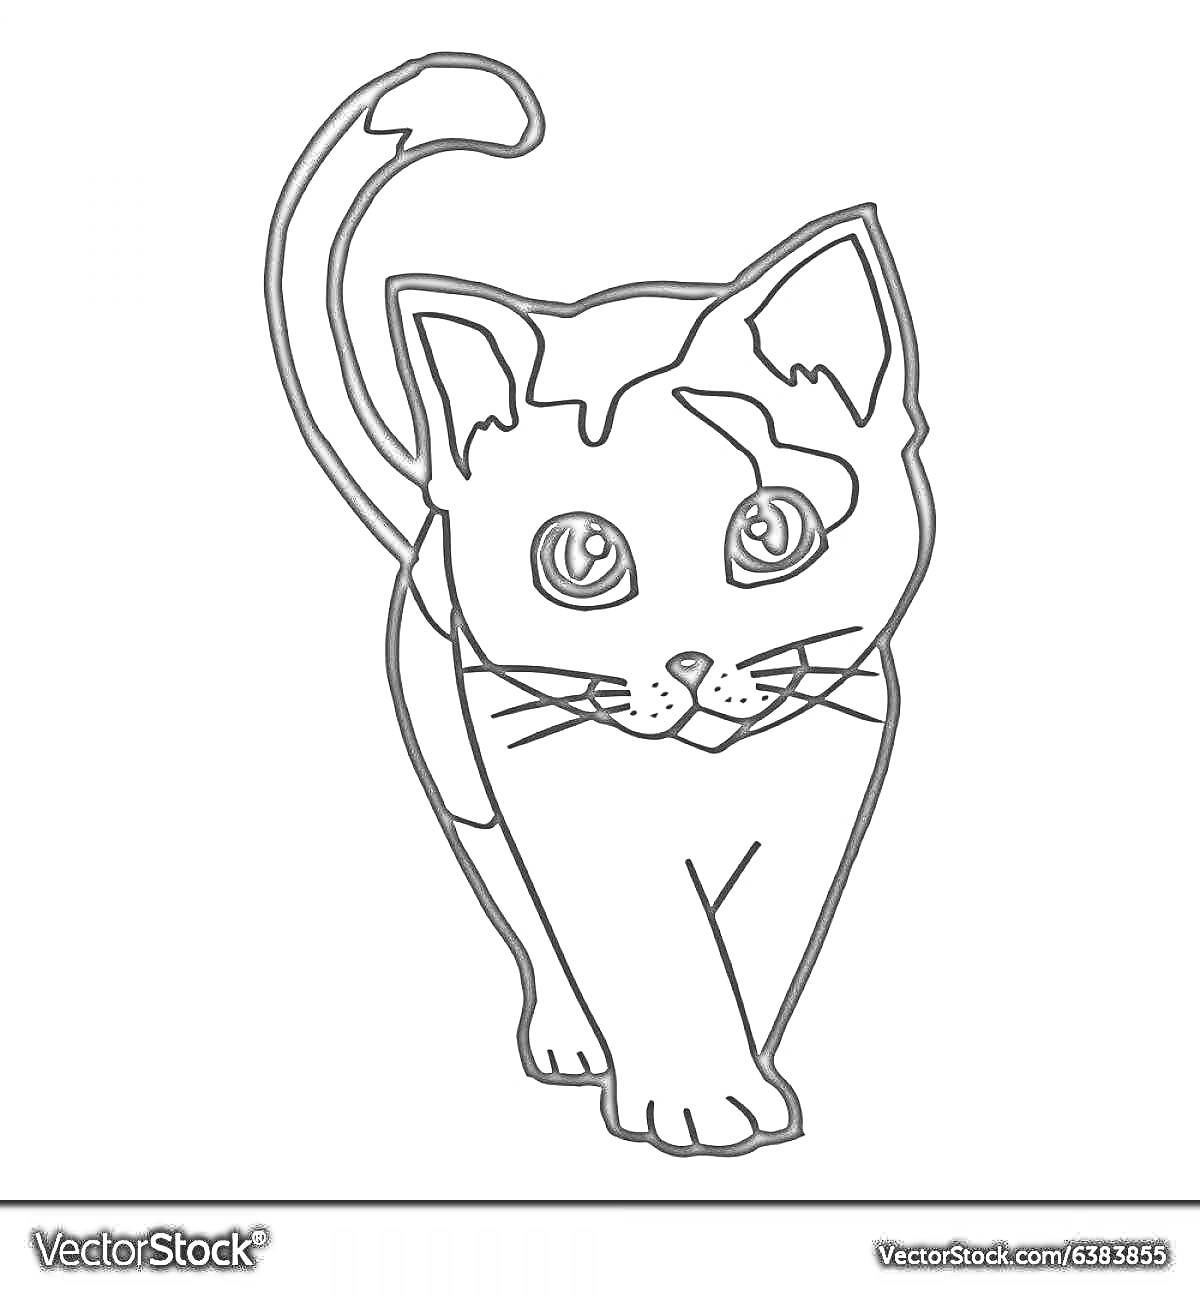 Раскраска Раскраска с котенком с высоко поднятым хвостом, крупные глаза